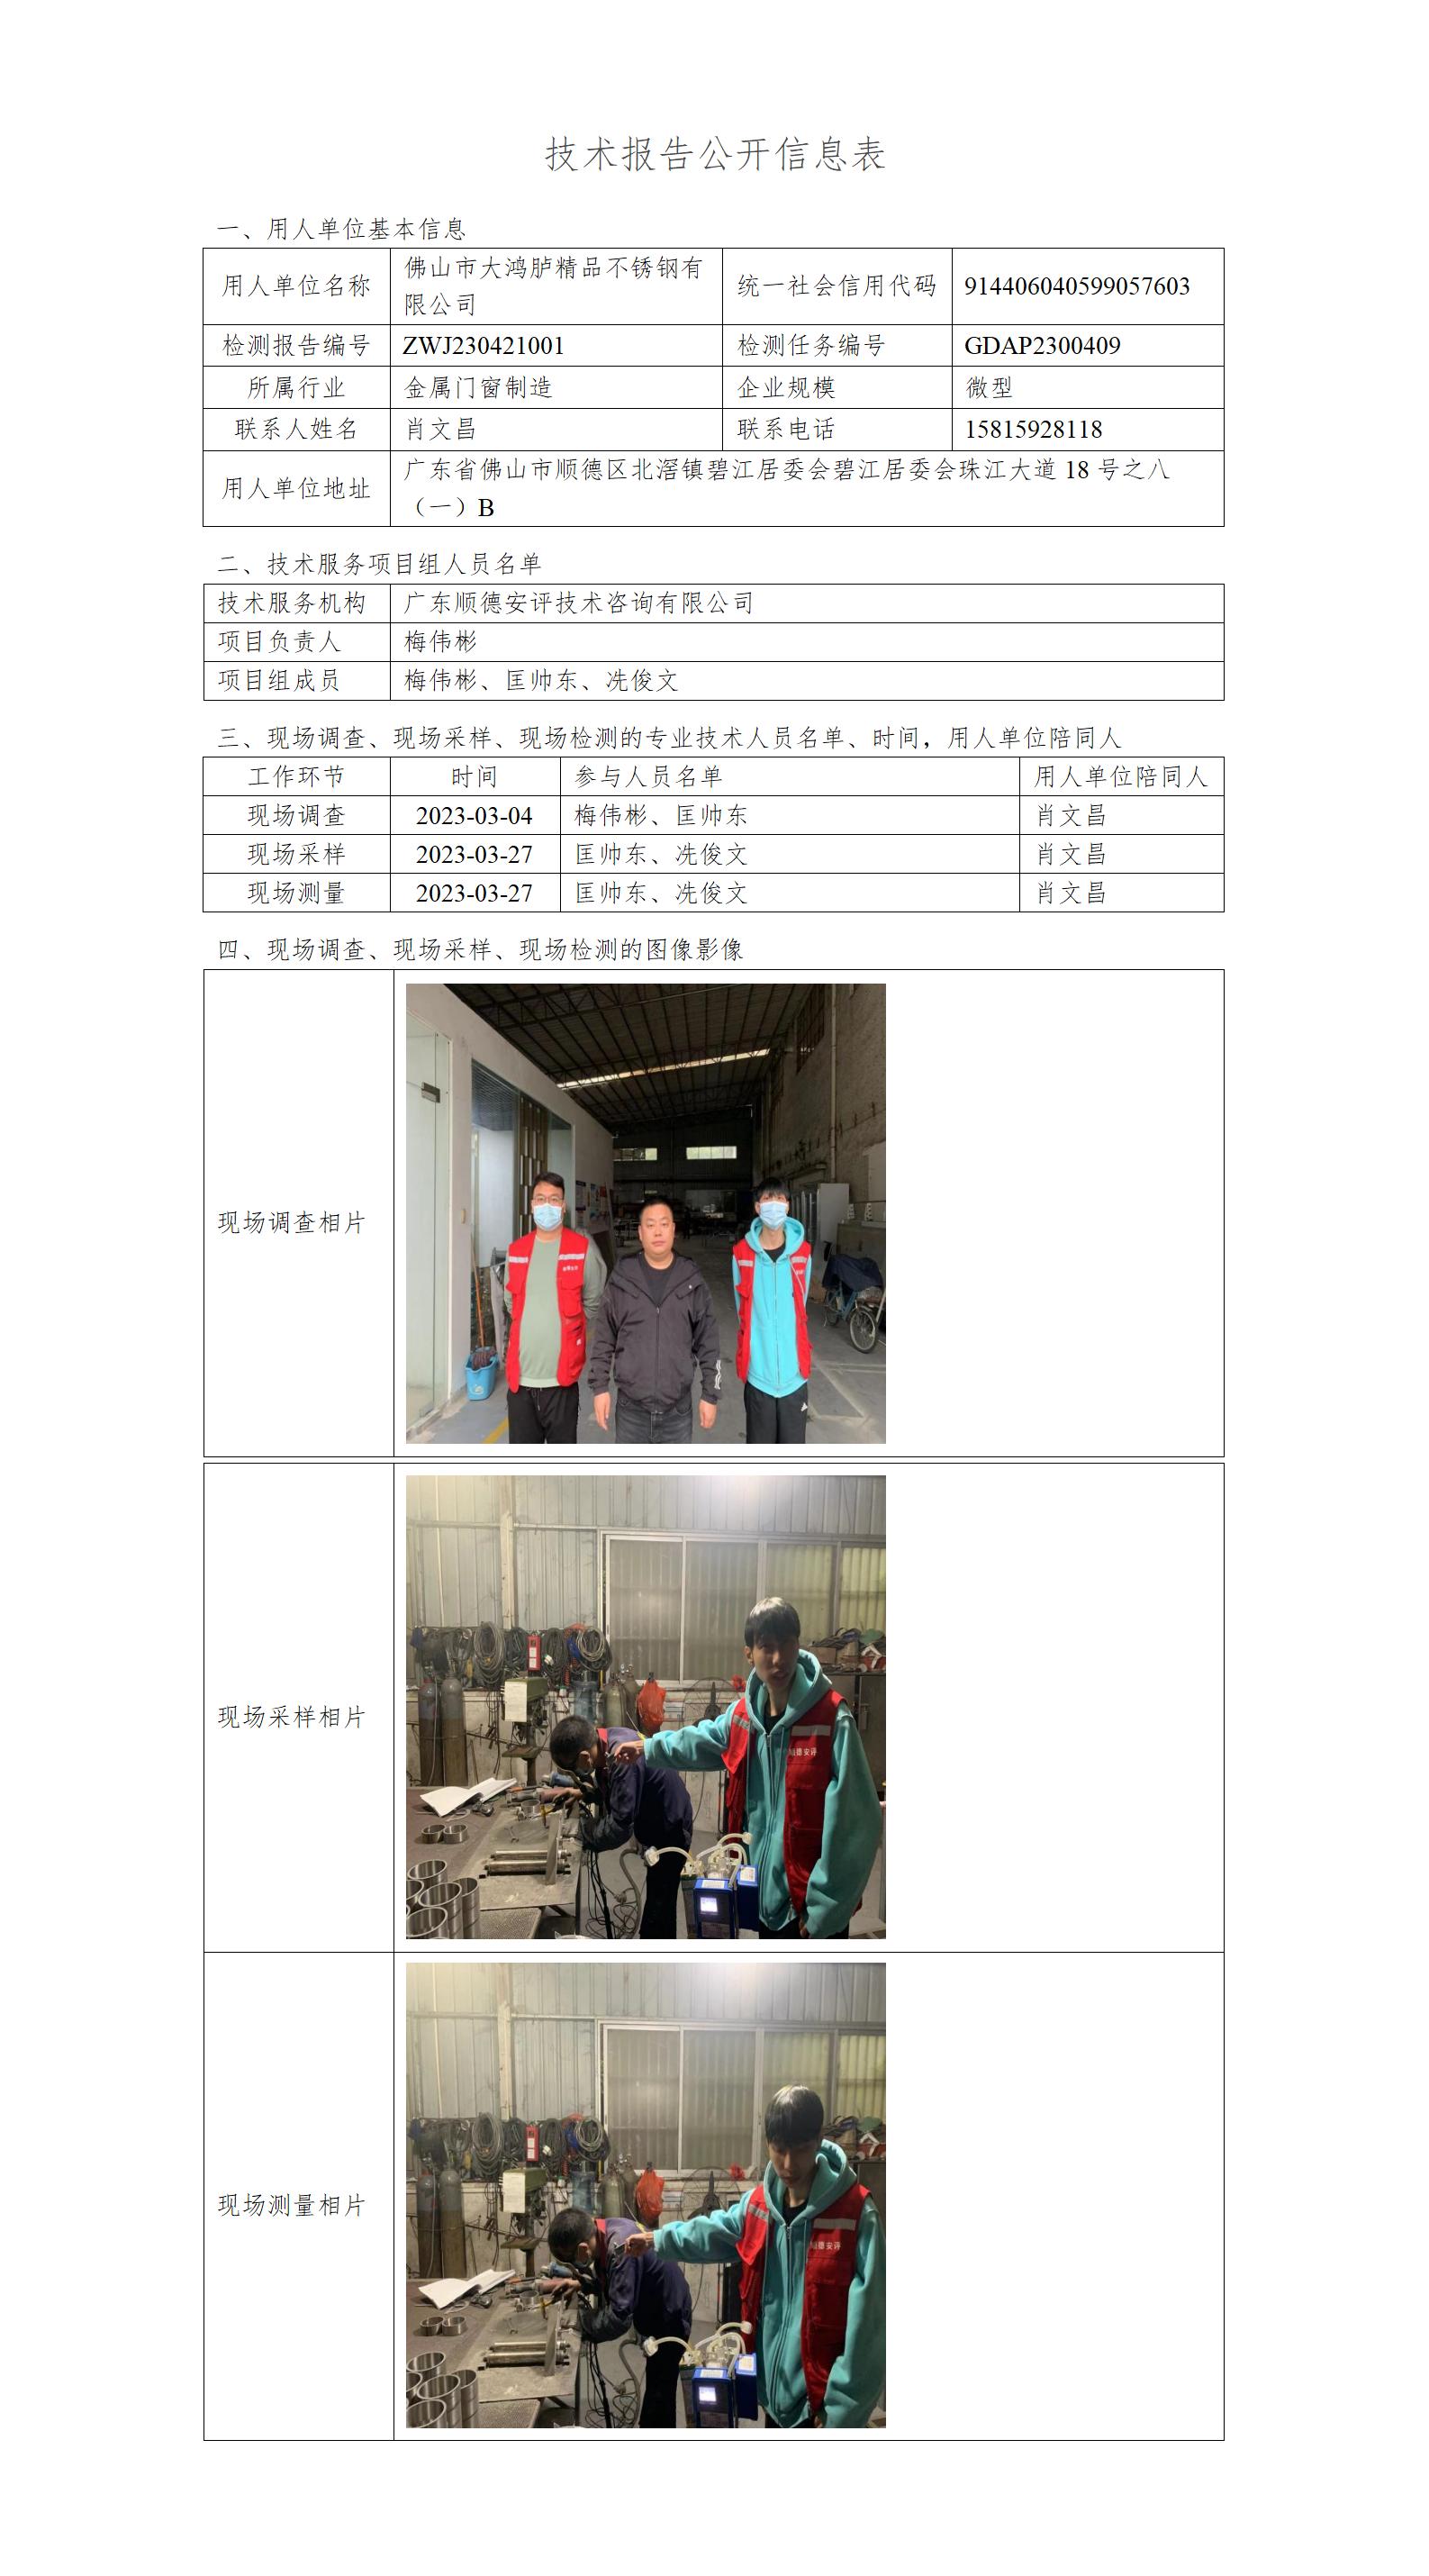 佛山市大鸿胪精品不锈钢有限公司-2023-技术报告公开信息表_01.jpg